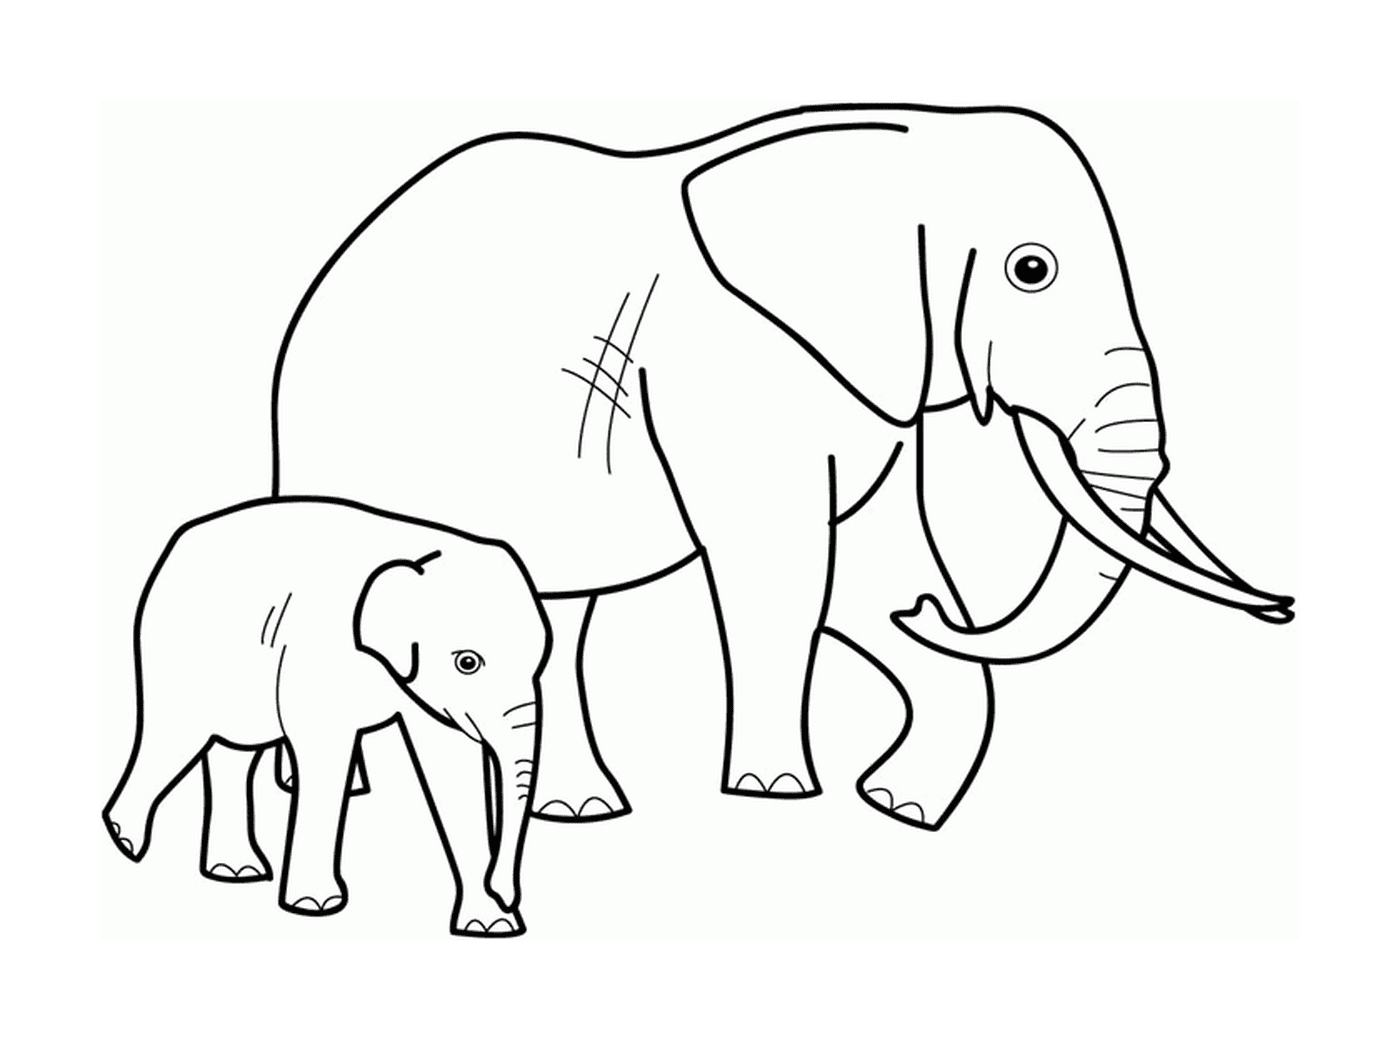  一只成年大象和相邻的大象 